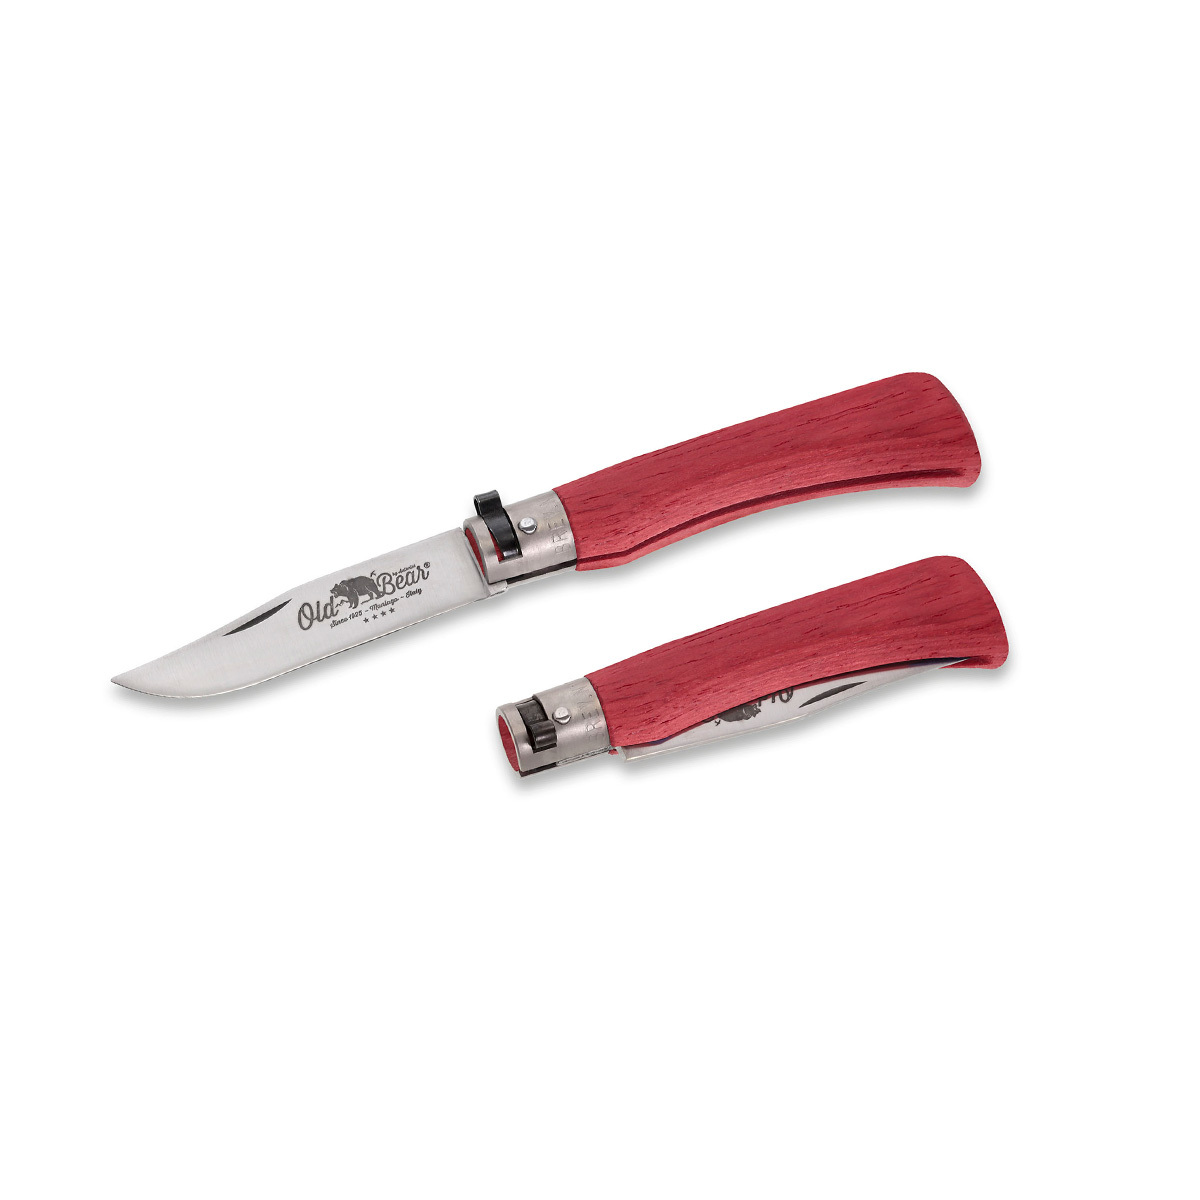 Складной нож Antonini Old Bear® Full Color XL, сталь 420, рукоять красная стабилизированная древесина от Ножиков